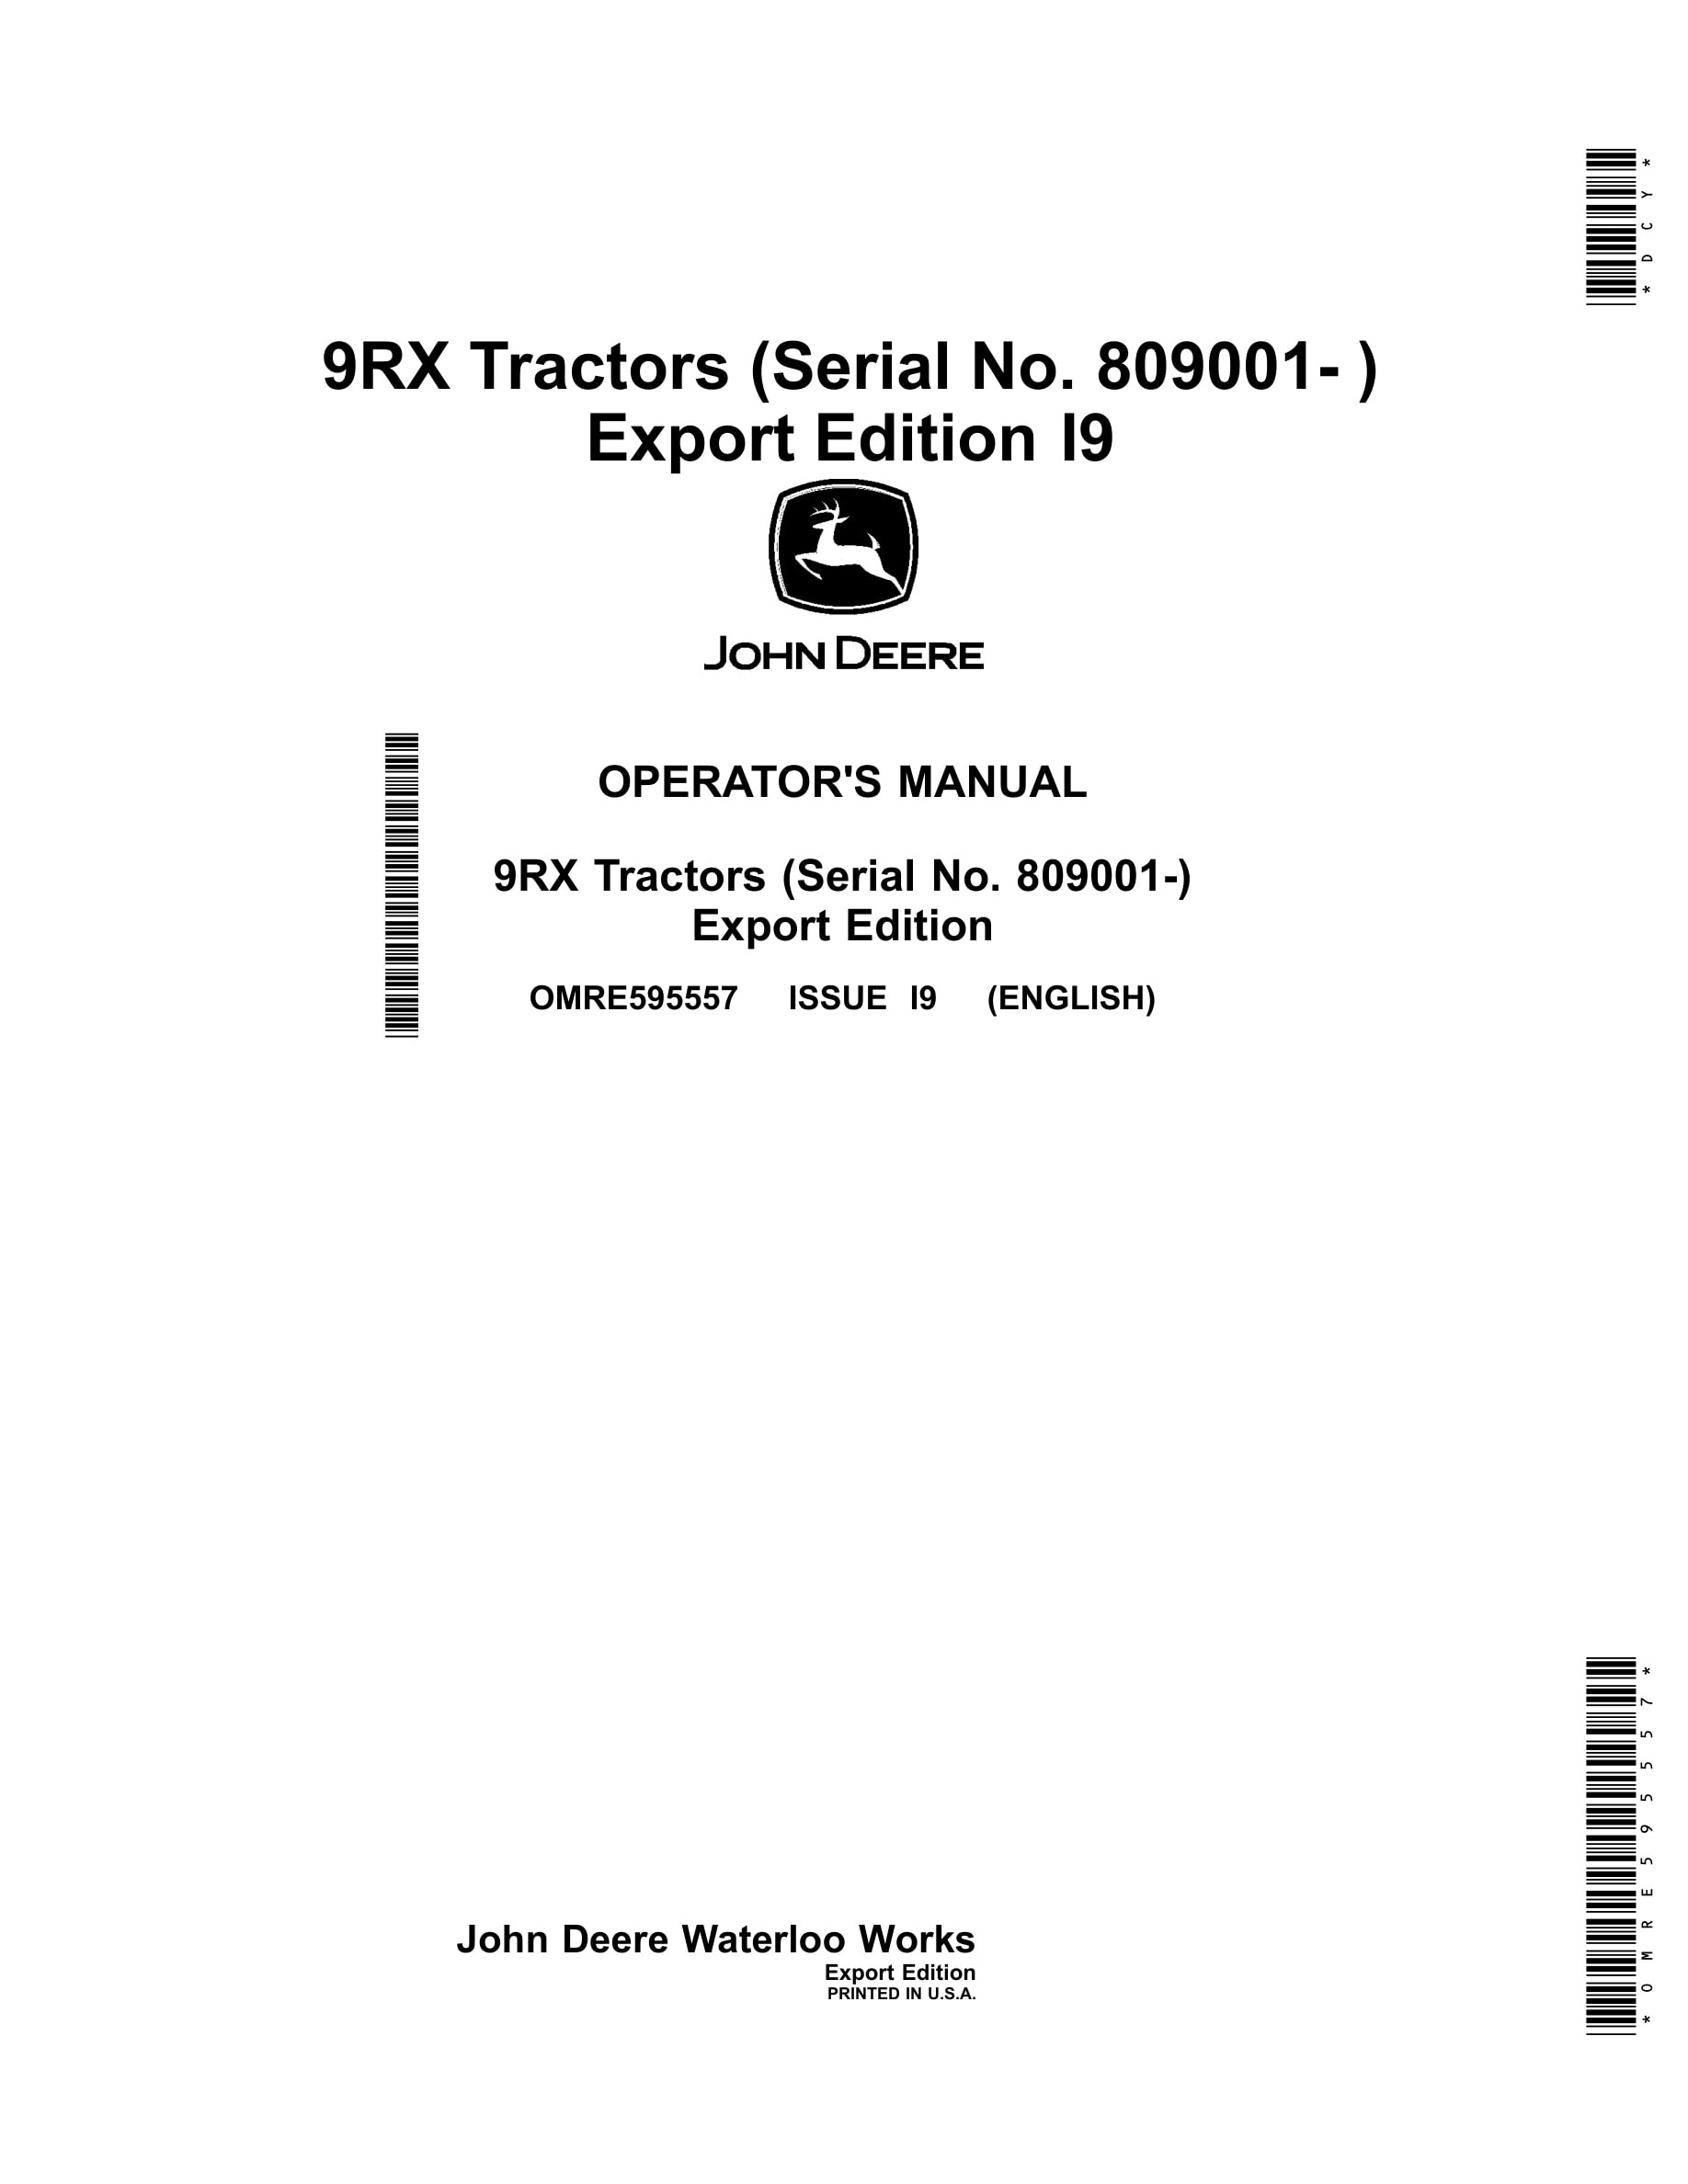 John Deere 9rx Tractors Operator Manuals OMRE595557-1